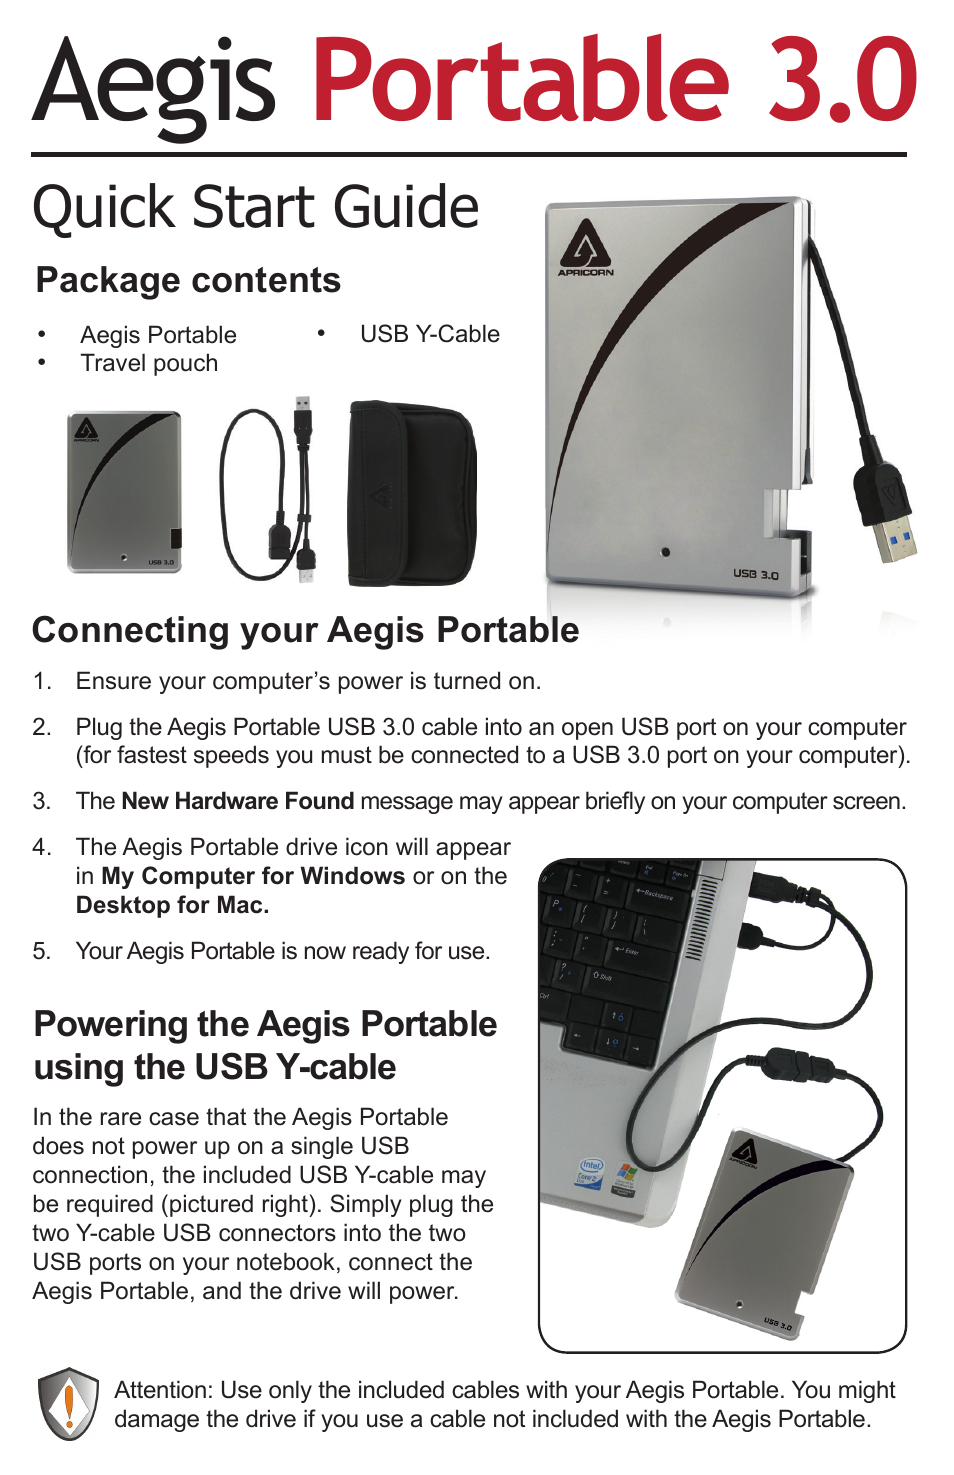 Aegis Portable 3.0